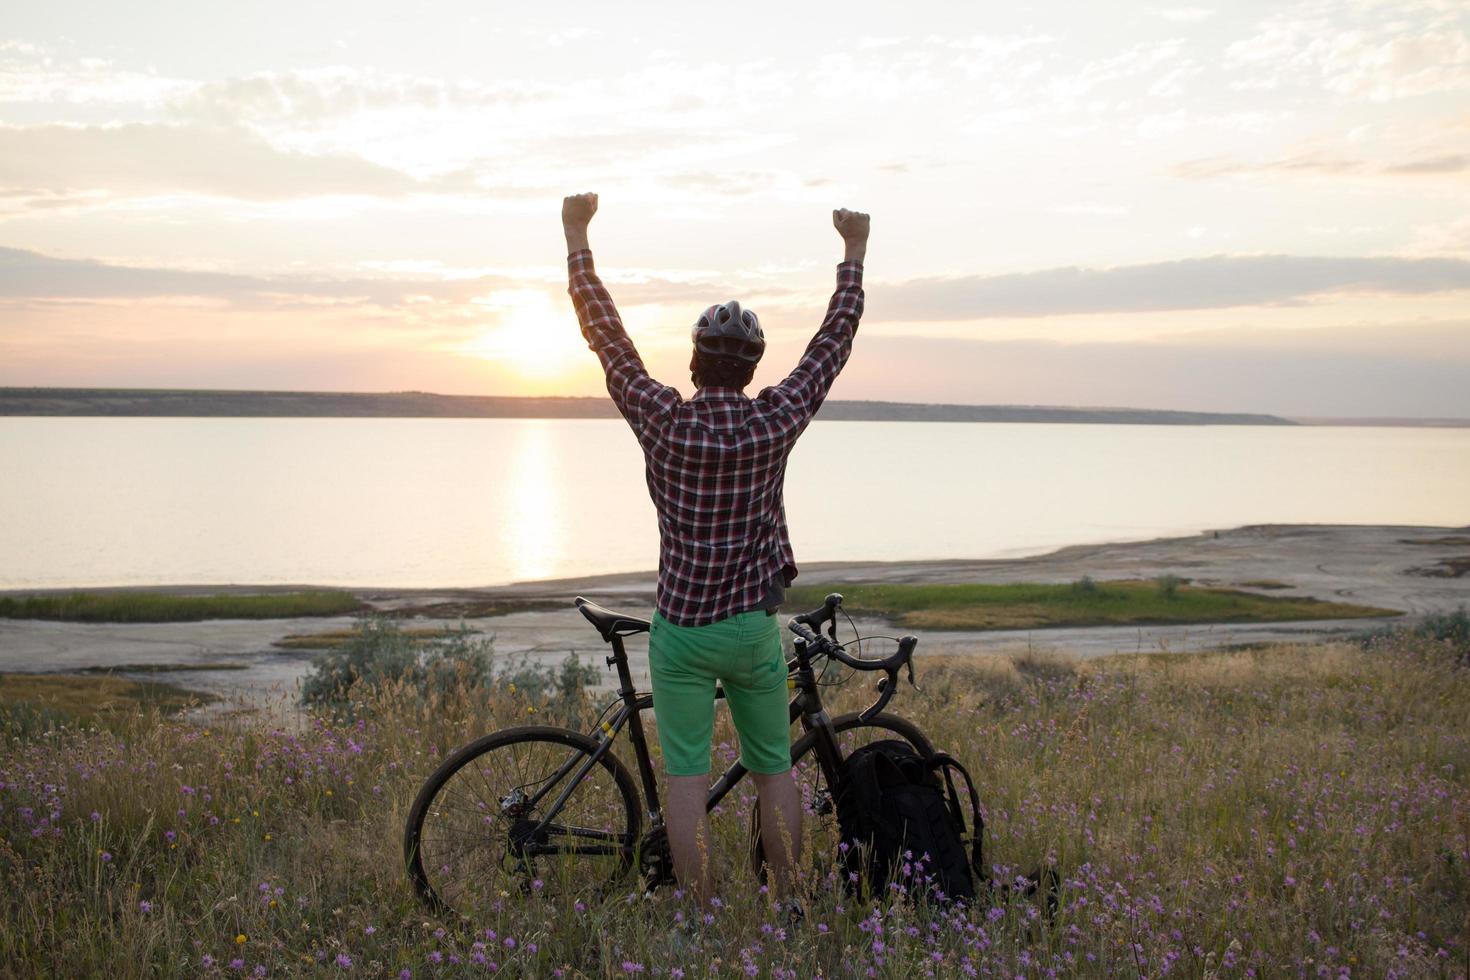 silueta de un hombre con bicicleta de carretera de gira mirando y haciendo una foto de la puesta de sol en el lago en el teléfono celular